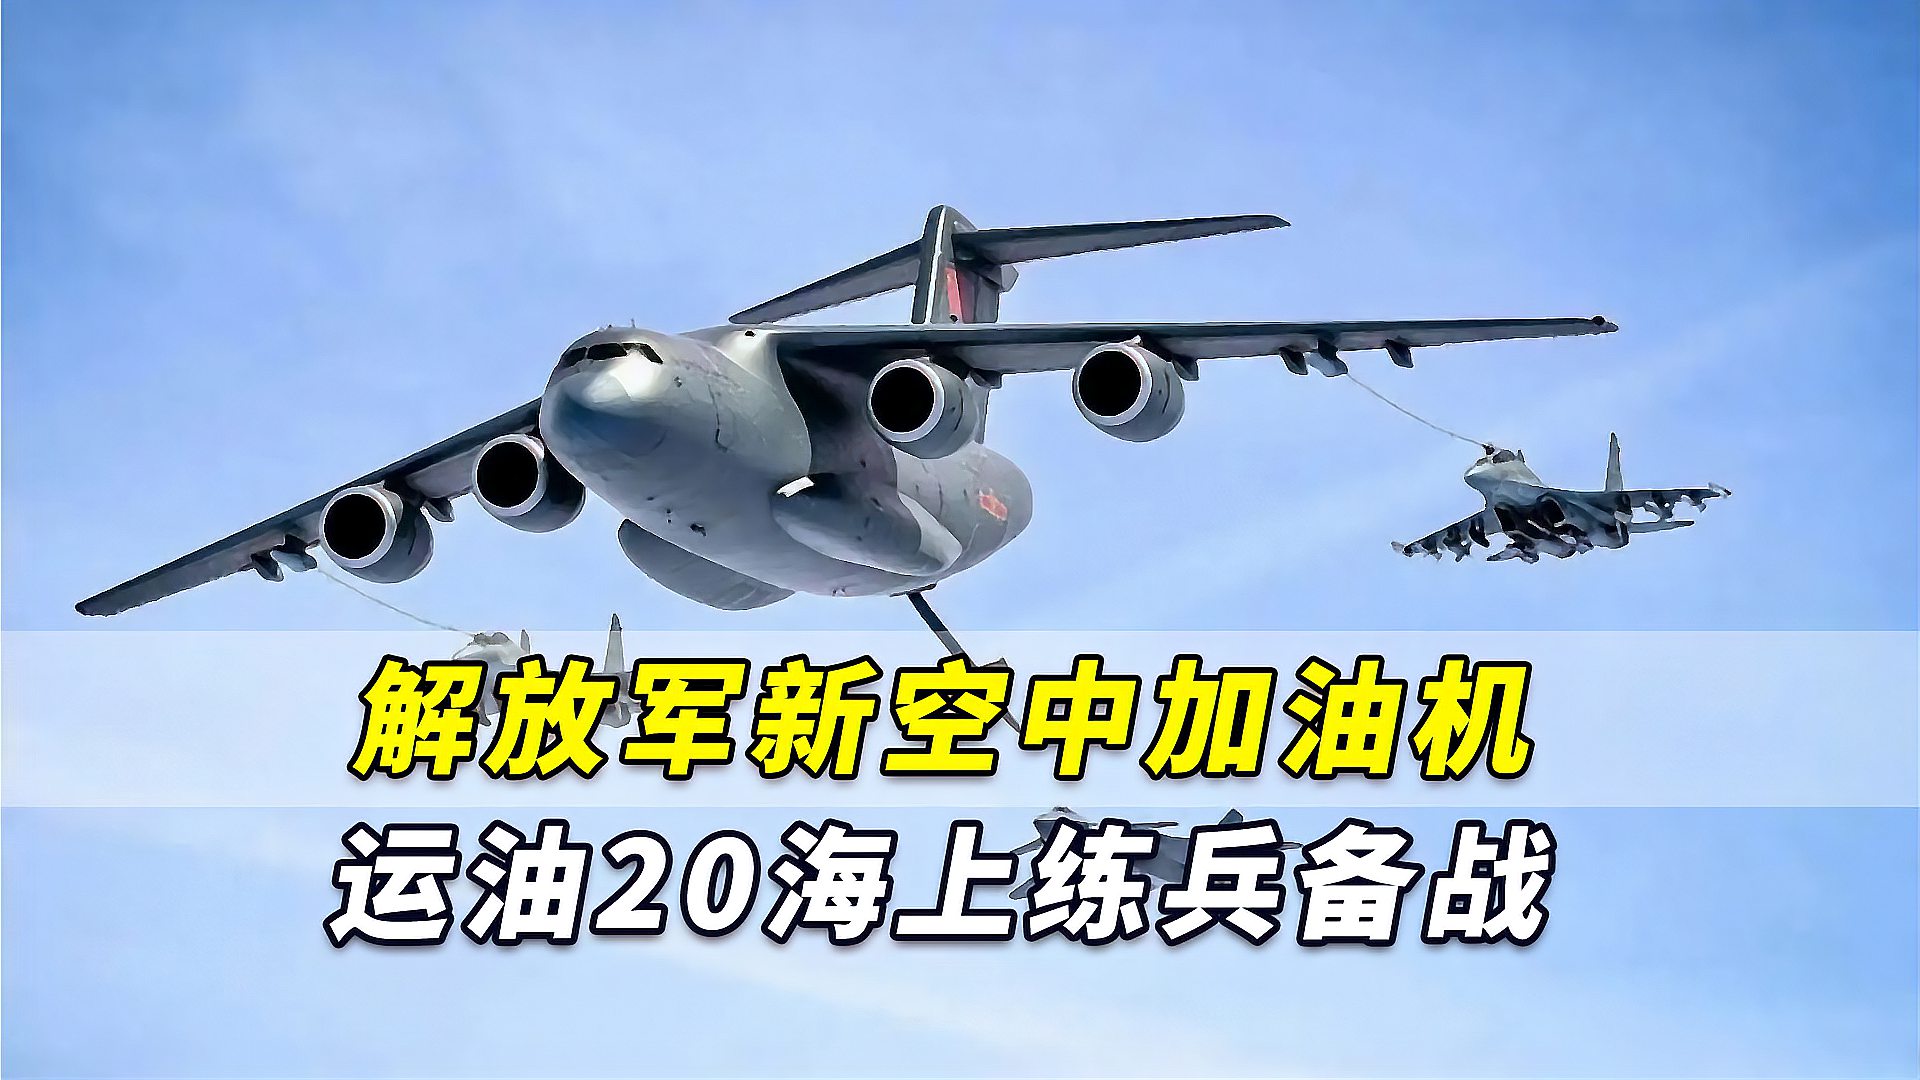 官宣解放军新一代空中加油机运油20投入海上练兵备战